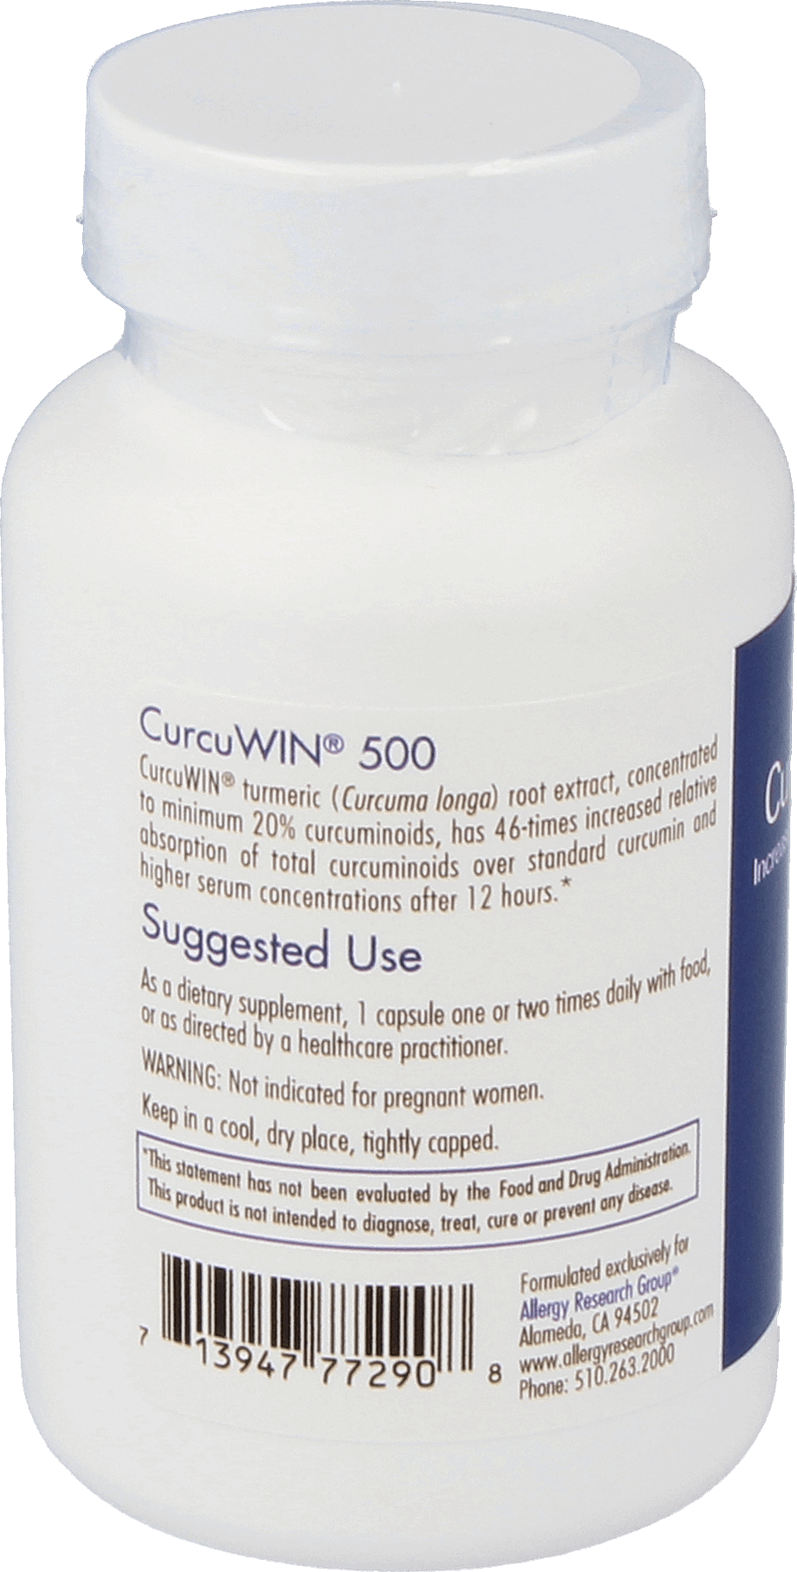 CurcuWIN® 500 